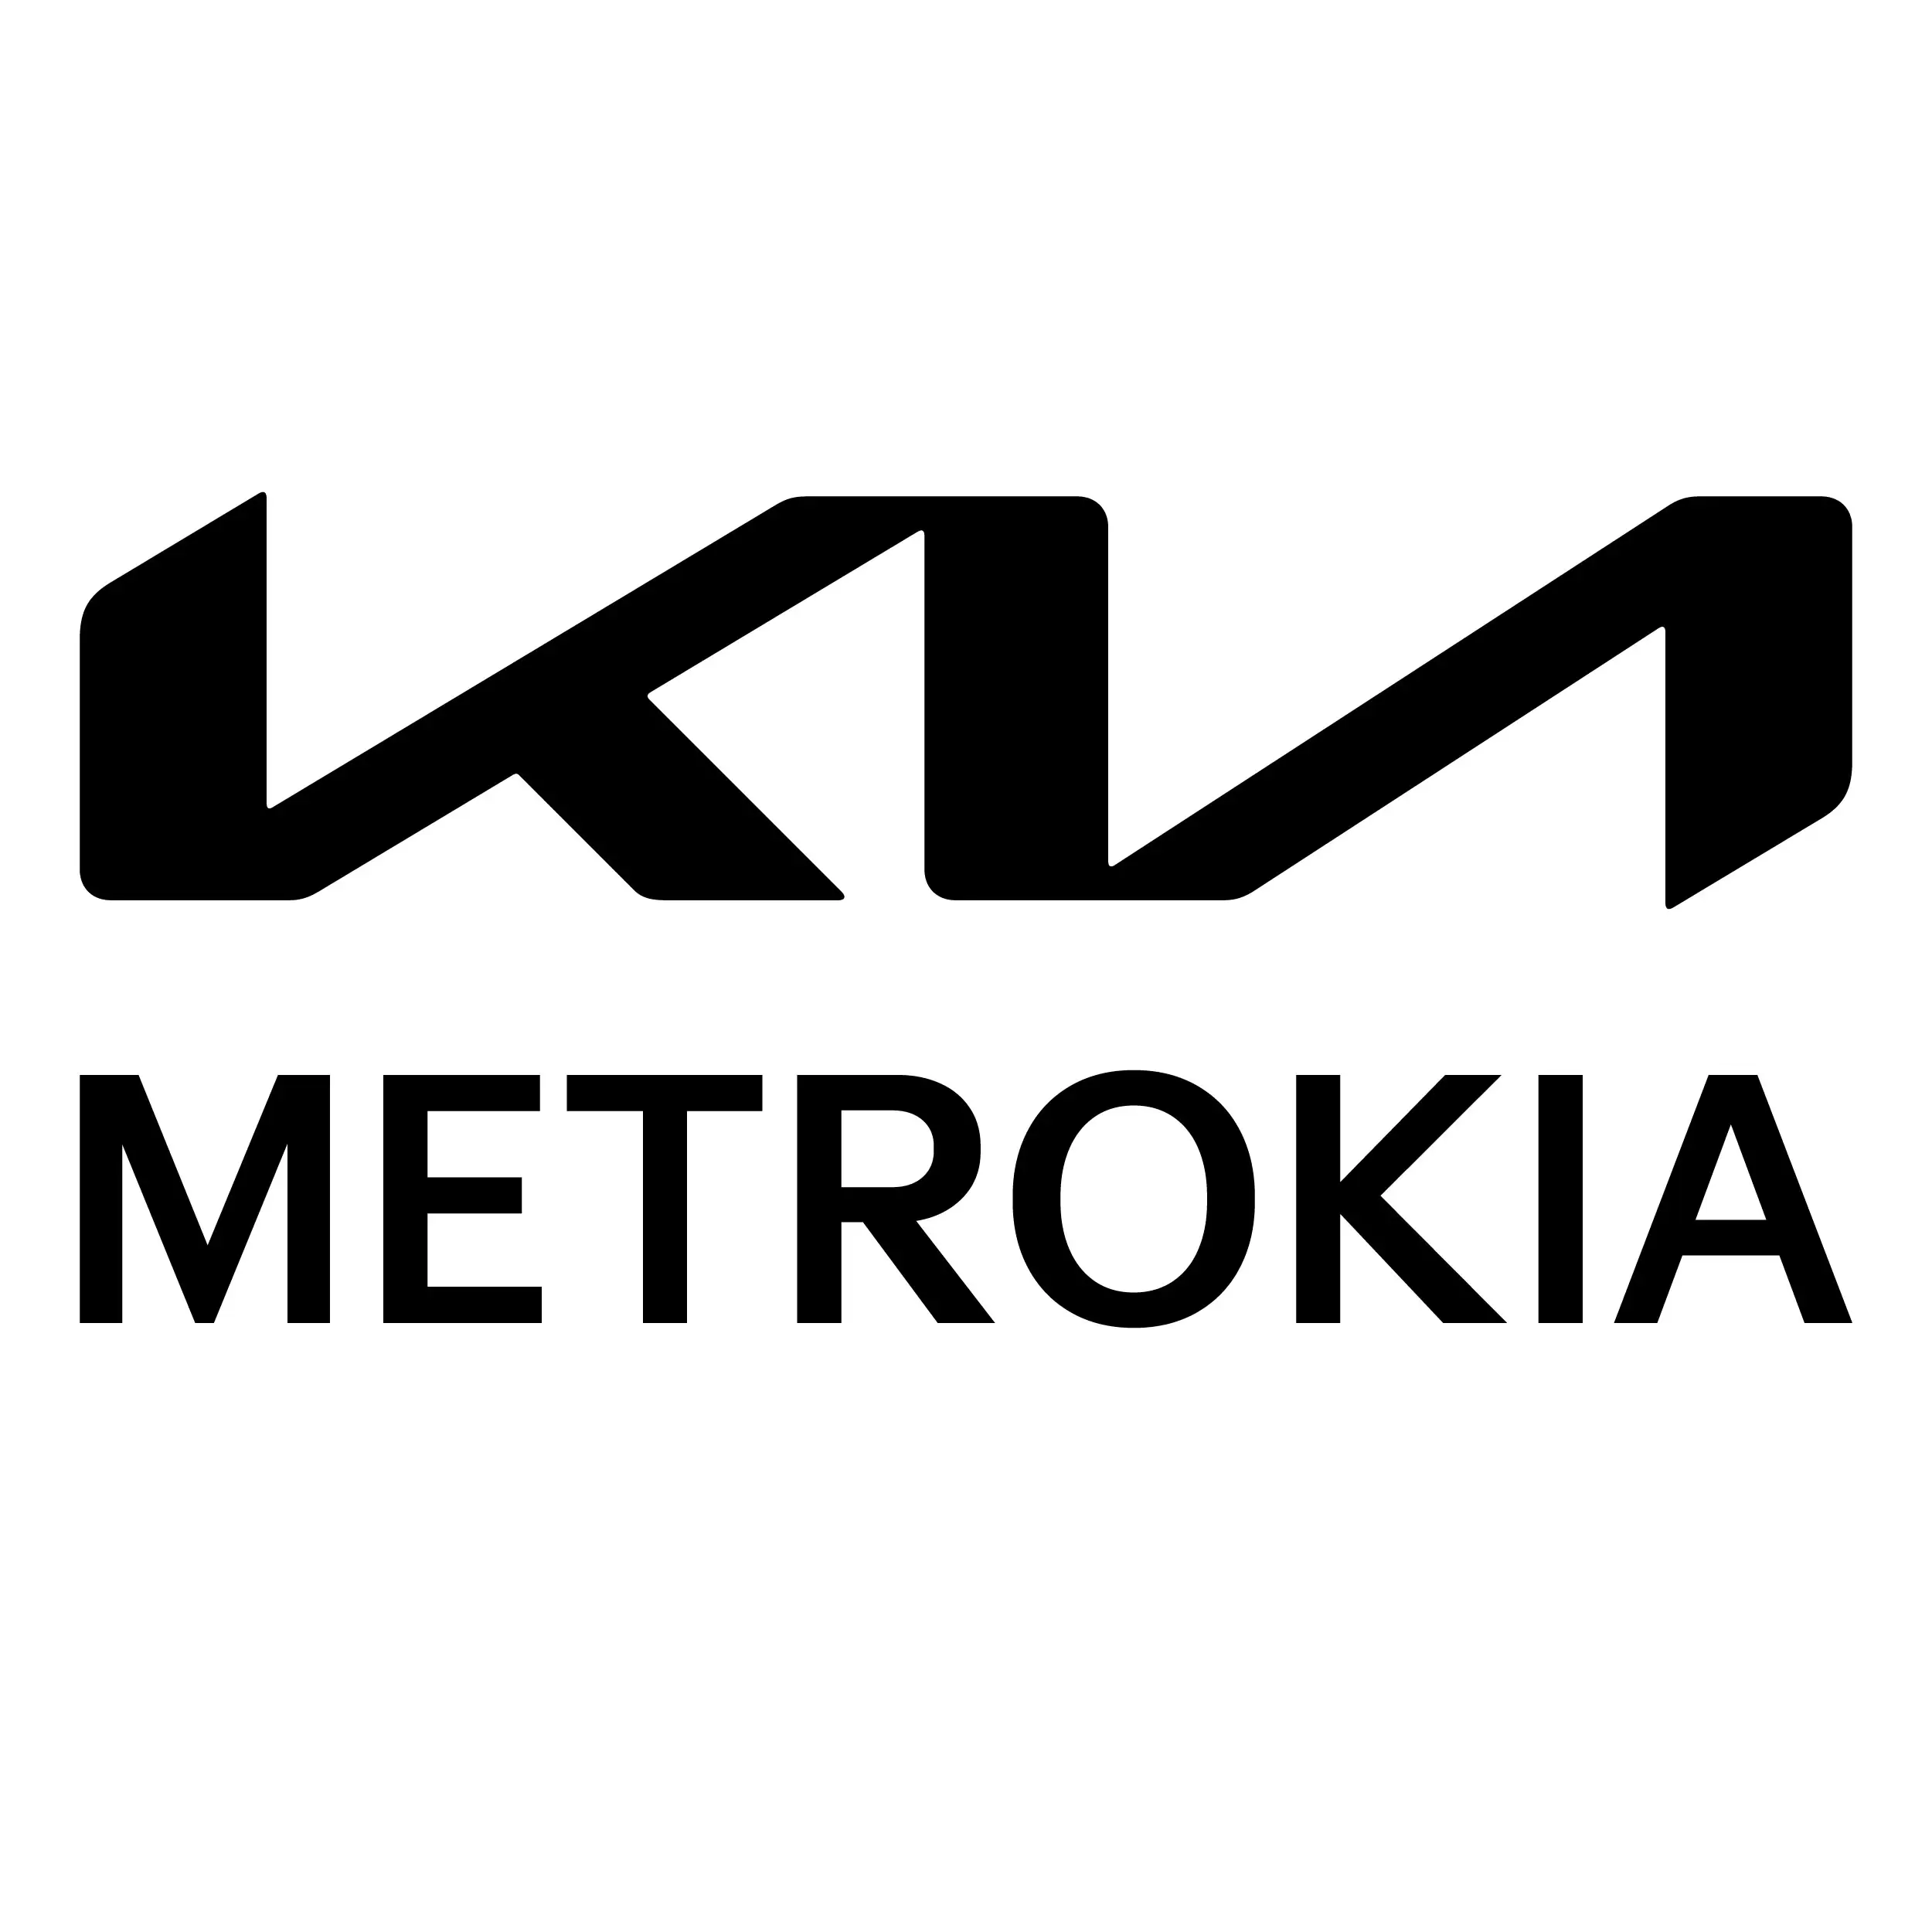 Metrokia